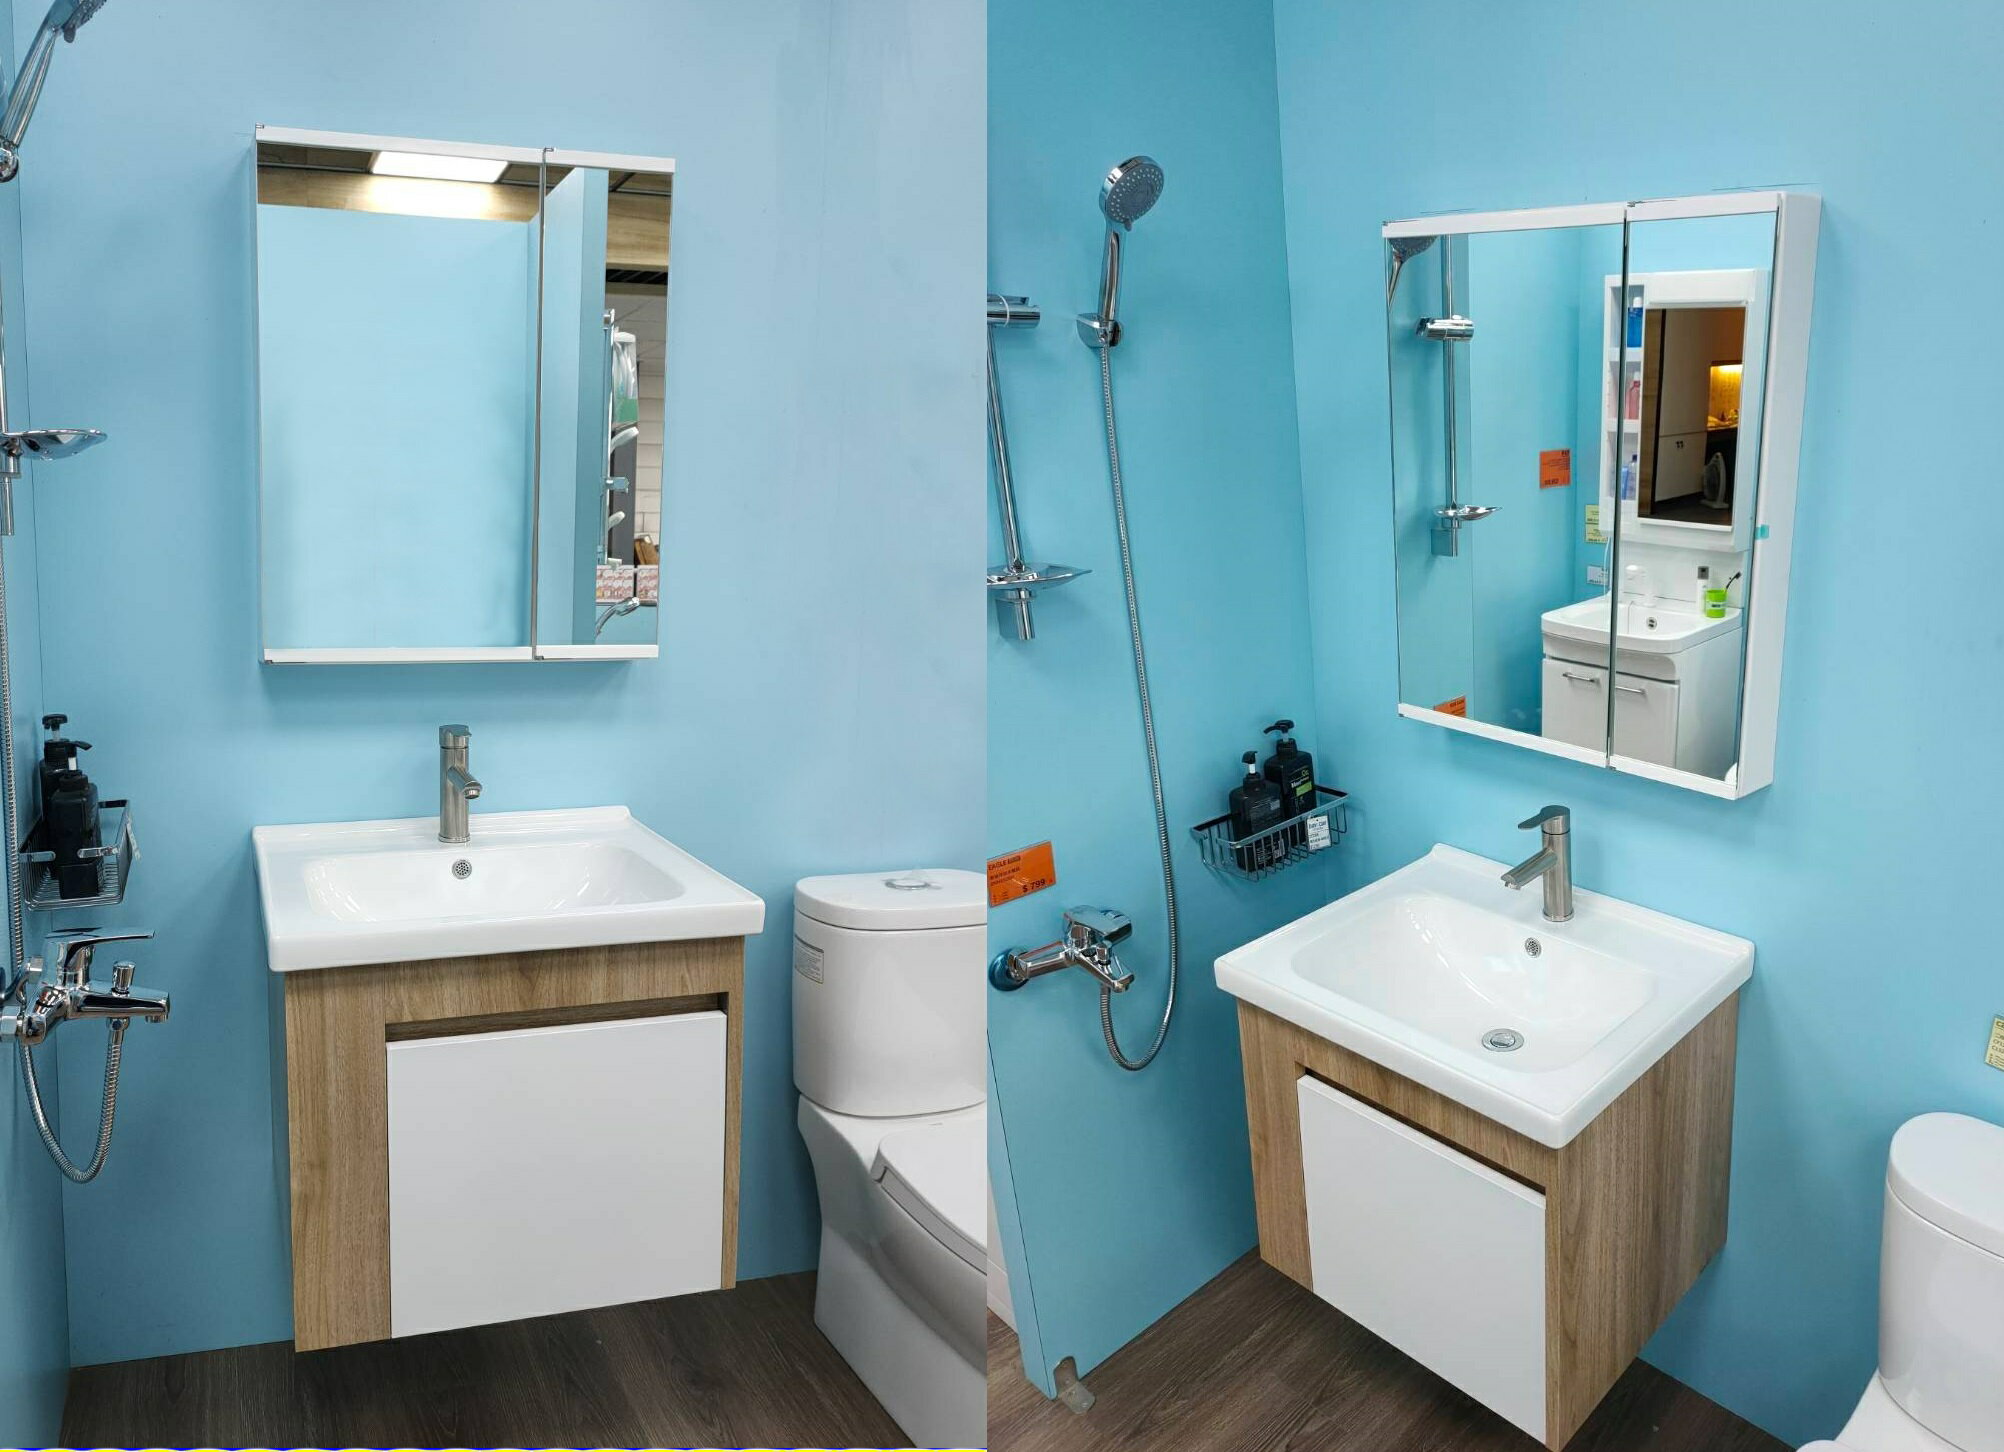 超值三件組 日式A鏡ABS收納鏡櫃+立體瓷盆搭配不鏽鋼浴櫃組+不鏽鋼面盆龍頭(LAMB-60A+6148)